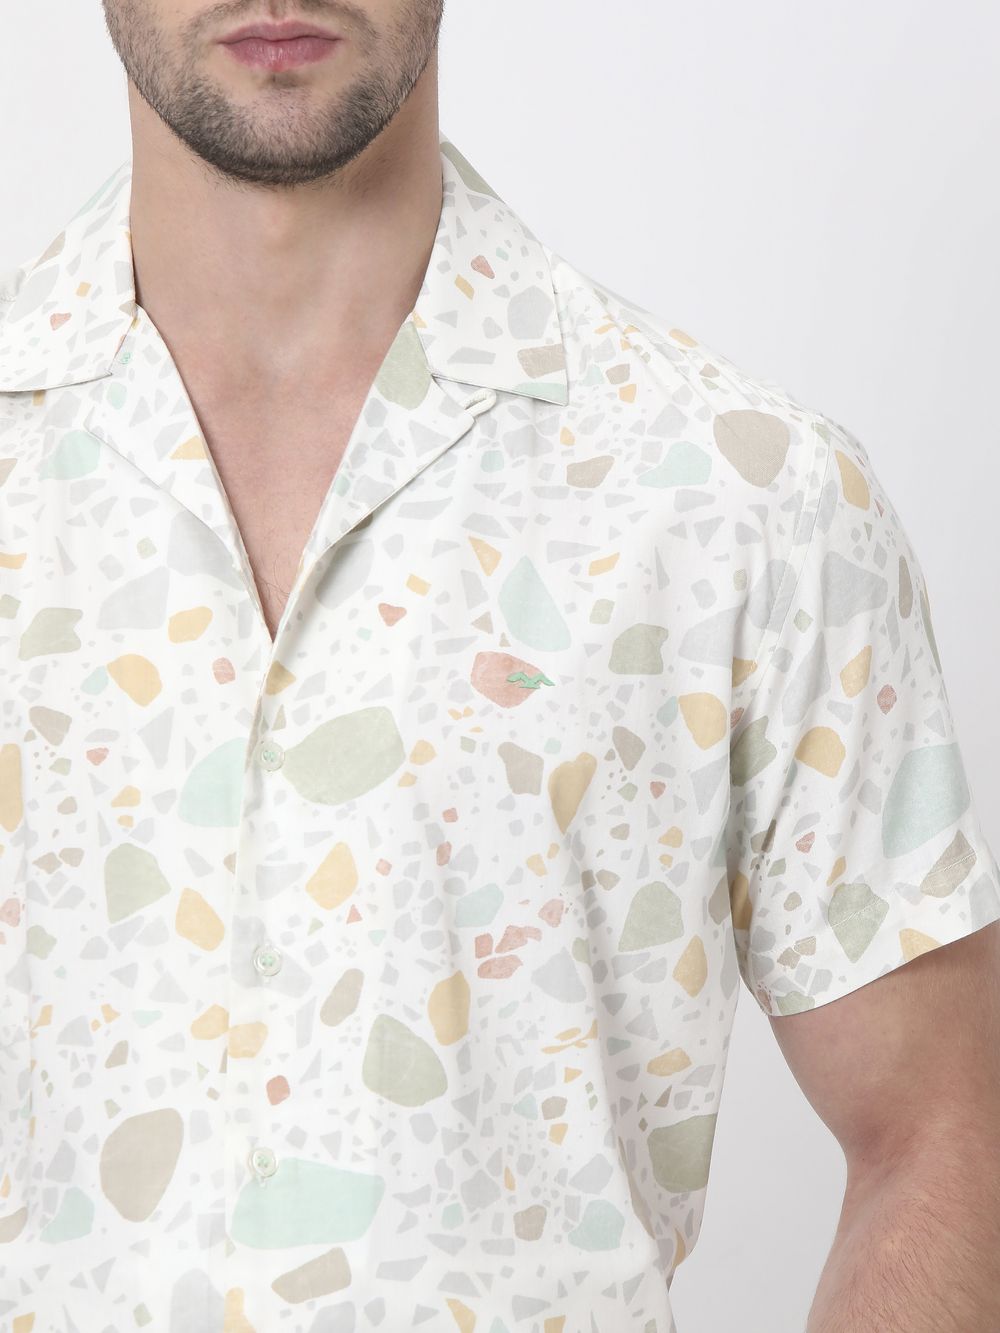 Multi Terrazzo Print Slim Fit Casual Shirt